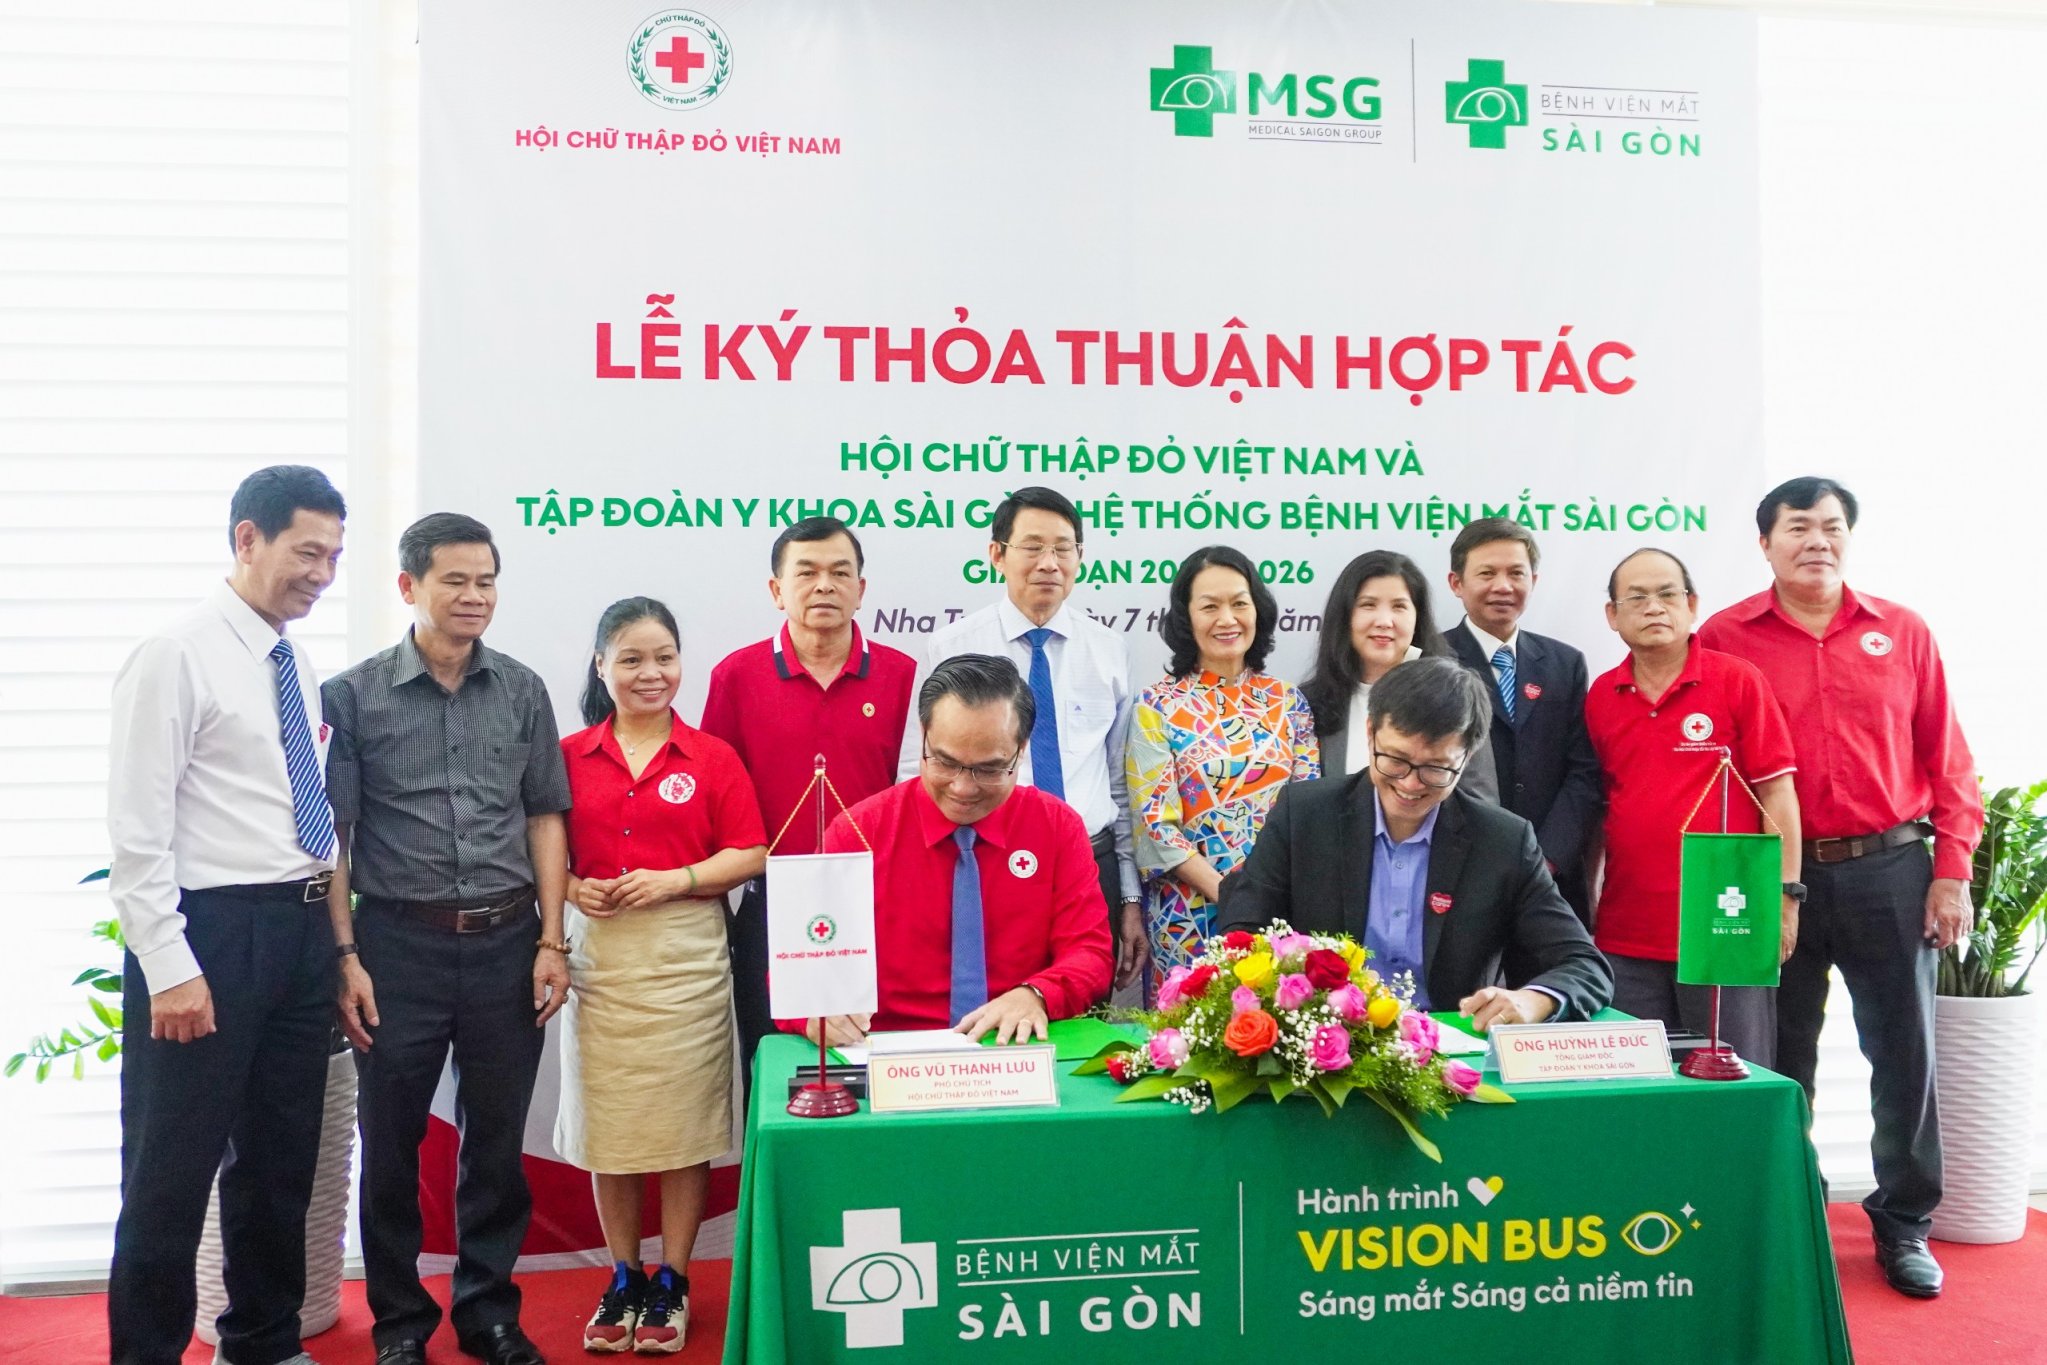 Lễ ký kết phối hợp hoạt động giữa Tập đoàn Y khoa Sài Gòn, Hệ thống Bệnh viện Mắt Sài Gòn  và Trung ương Hội Chữ thập đỏ Việt Nam